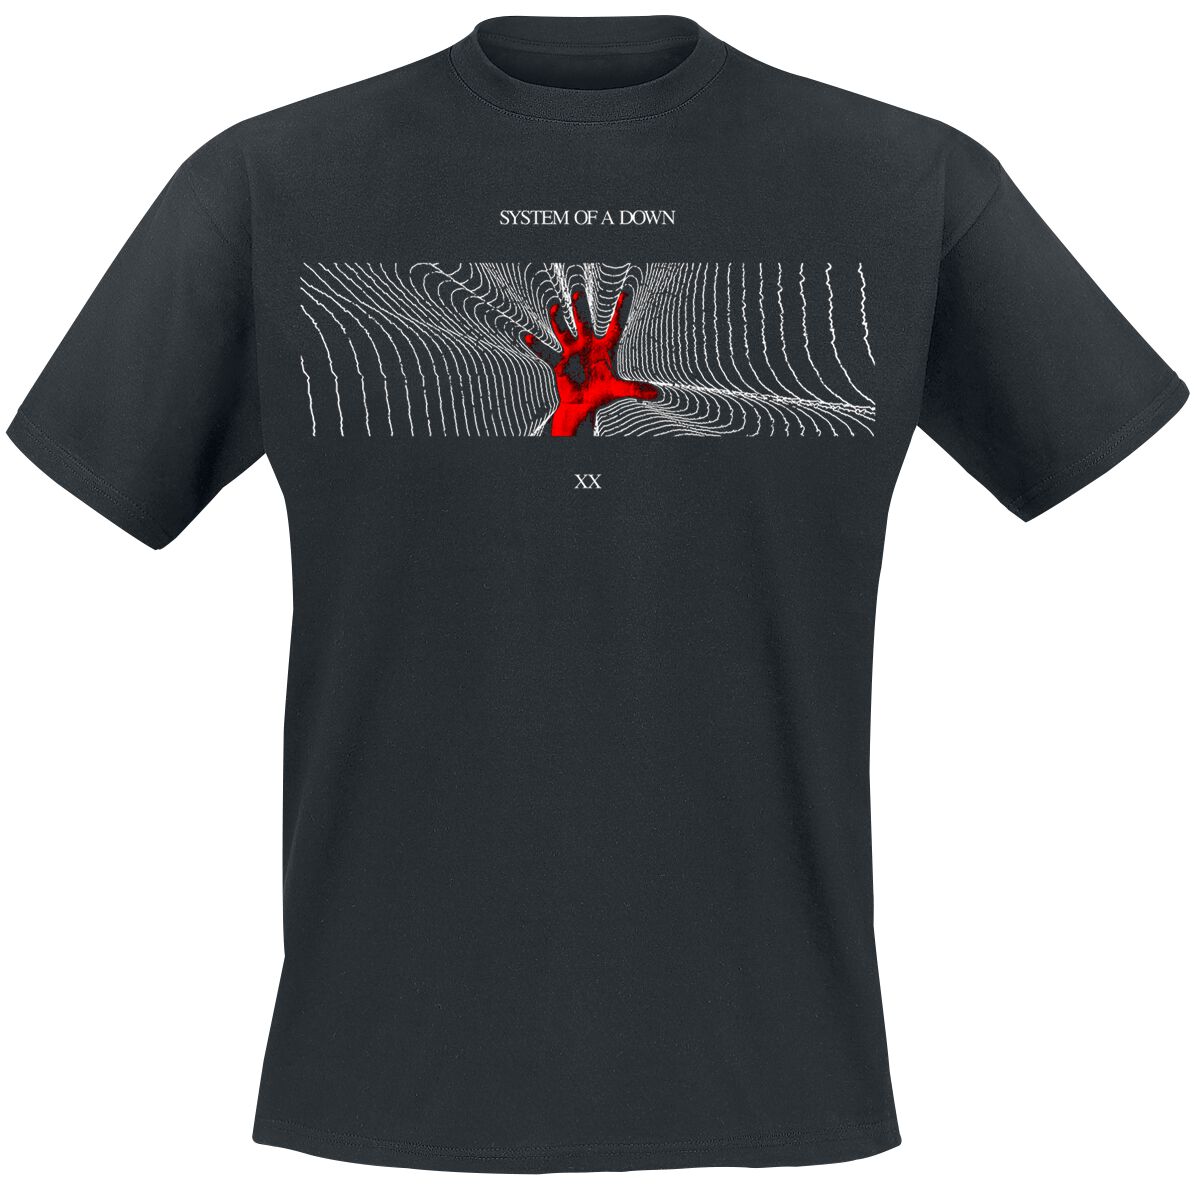 System Of A Down T-Shirt - Radiation - S bis XXL - für Männer - Größe XXL - schwarz  - Lizenziertes Merchandise!